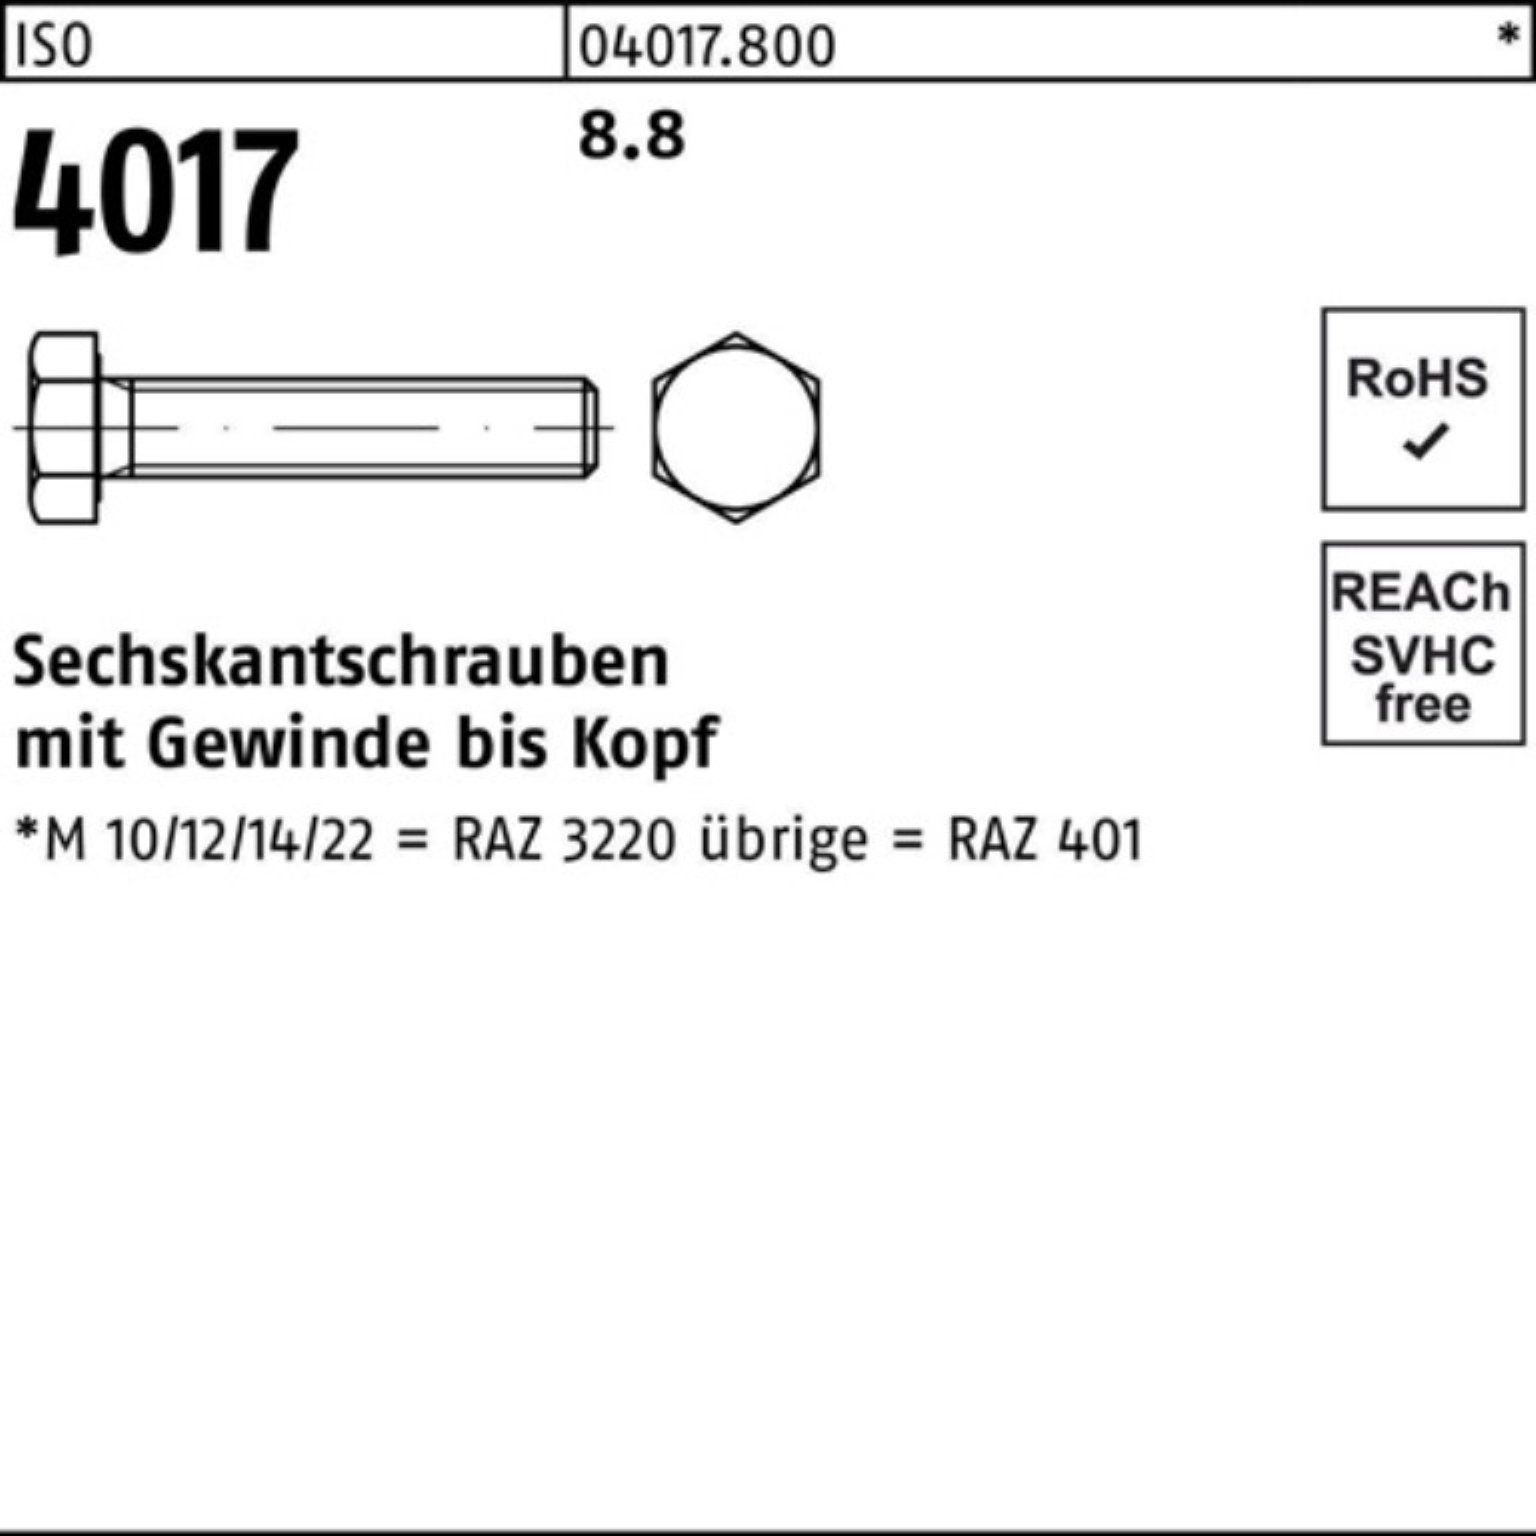 8.8 Stück M36x 1 4017 4017 Sechskantschraube 100er Pack ISO ISO Bufab VG Sechskantschraube 40